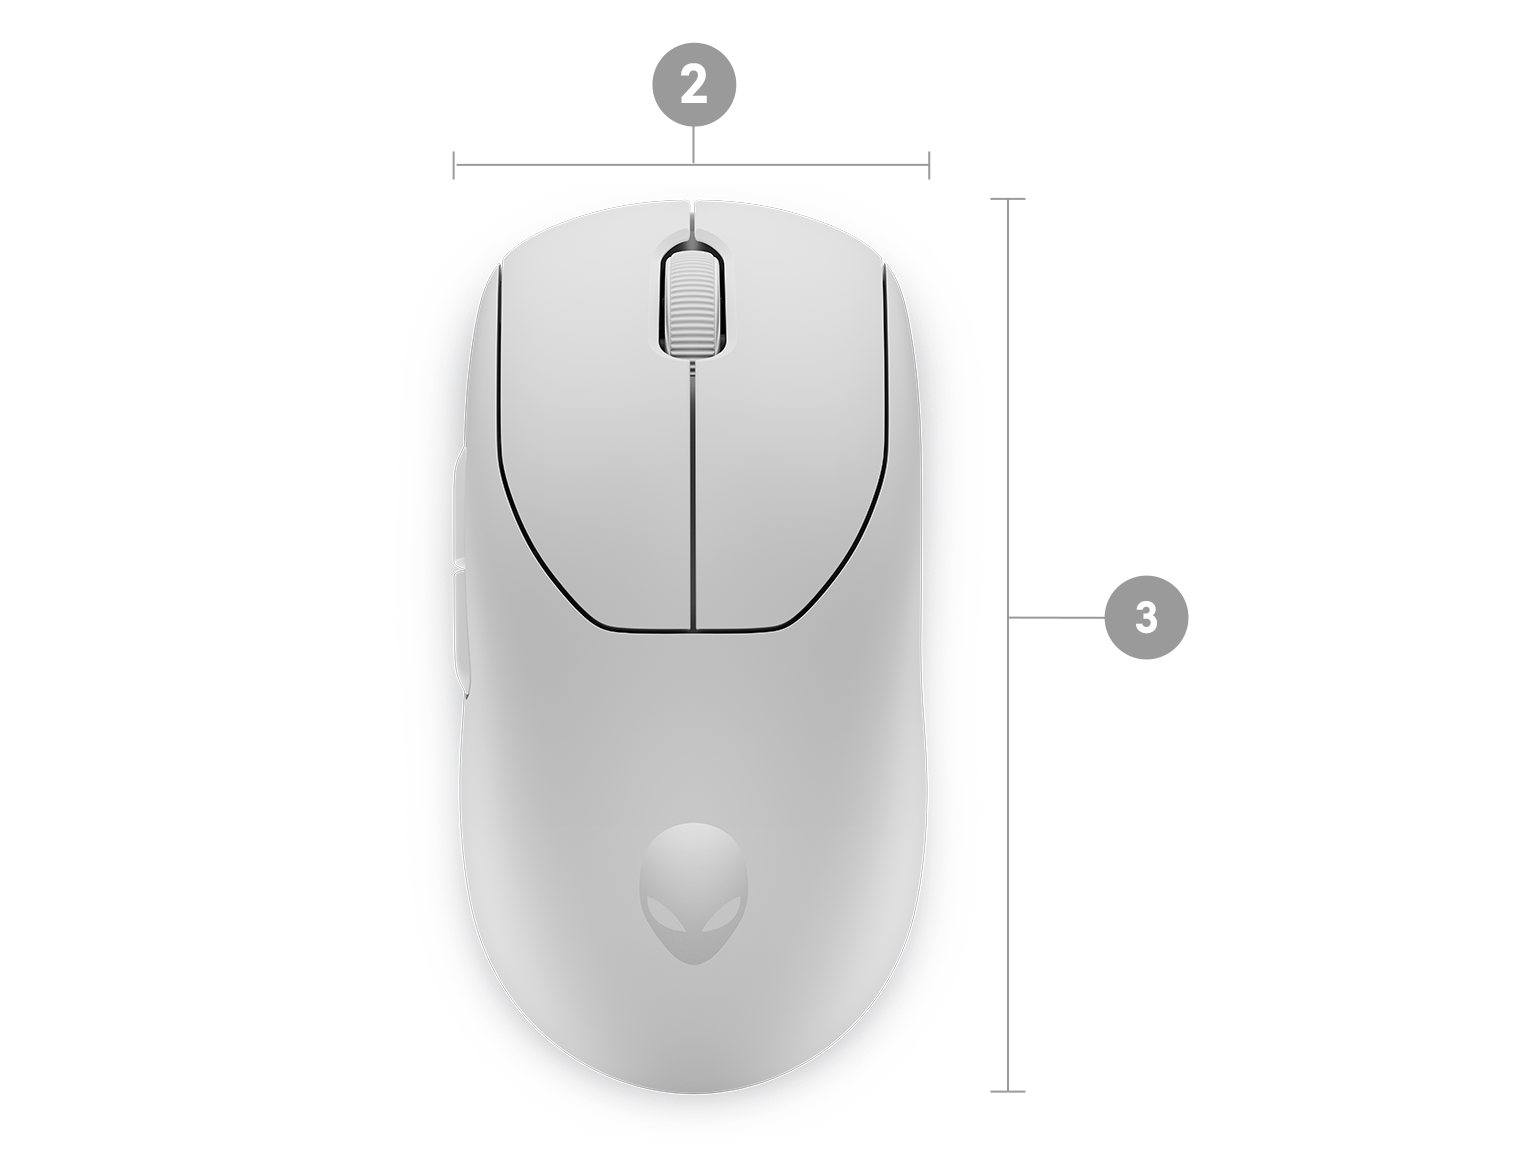 Bezprzewodowa mysz dla graczy Alienware Pro z numerami od 1 do 3 oznaczającymi wymiary i wagę produktu.